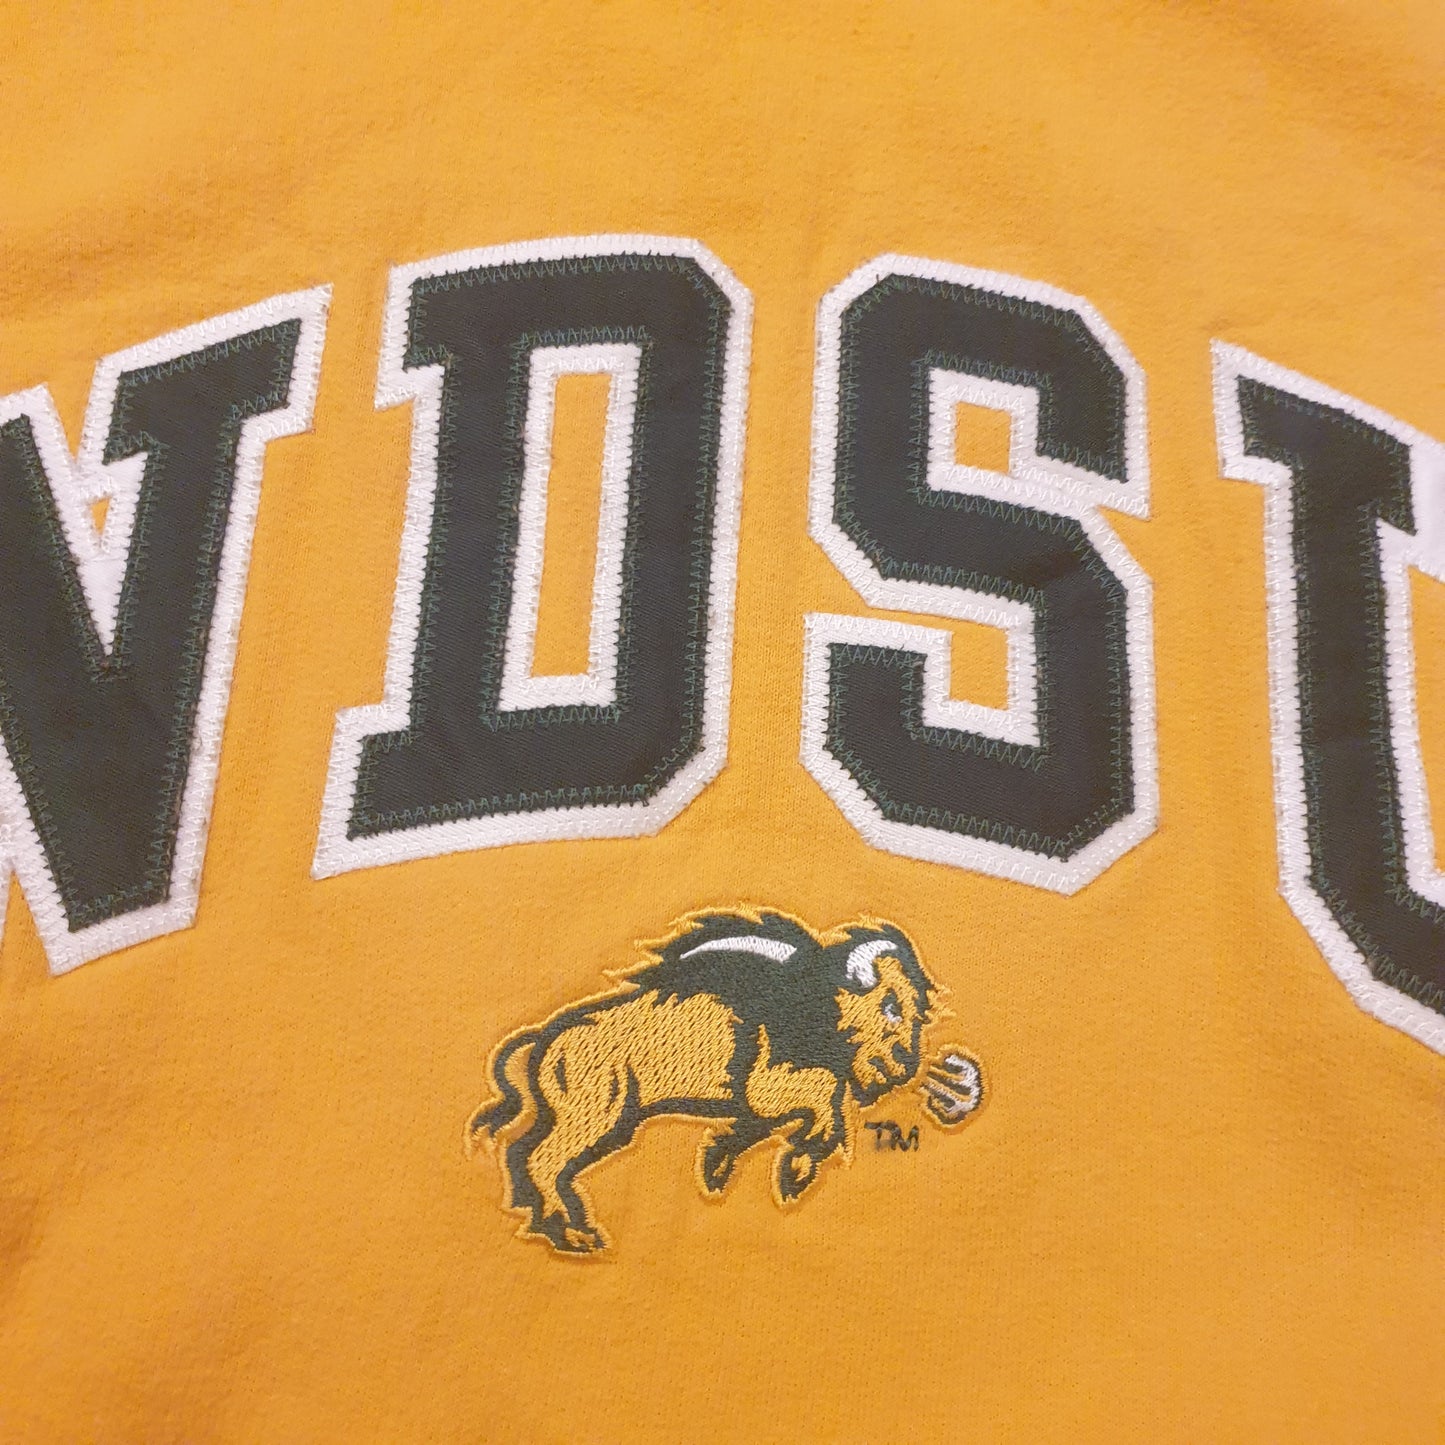 NDSU University Sweatshirt L